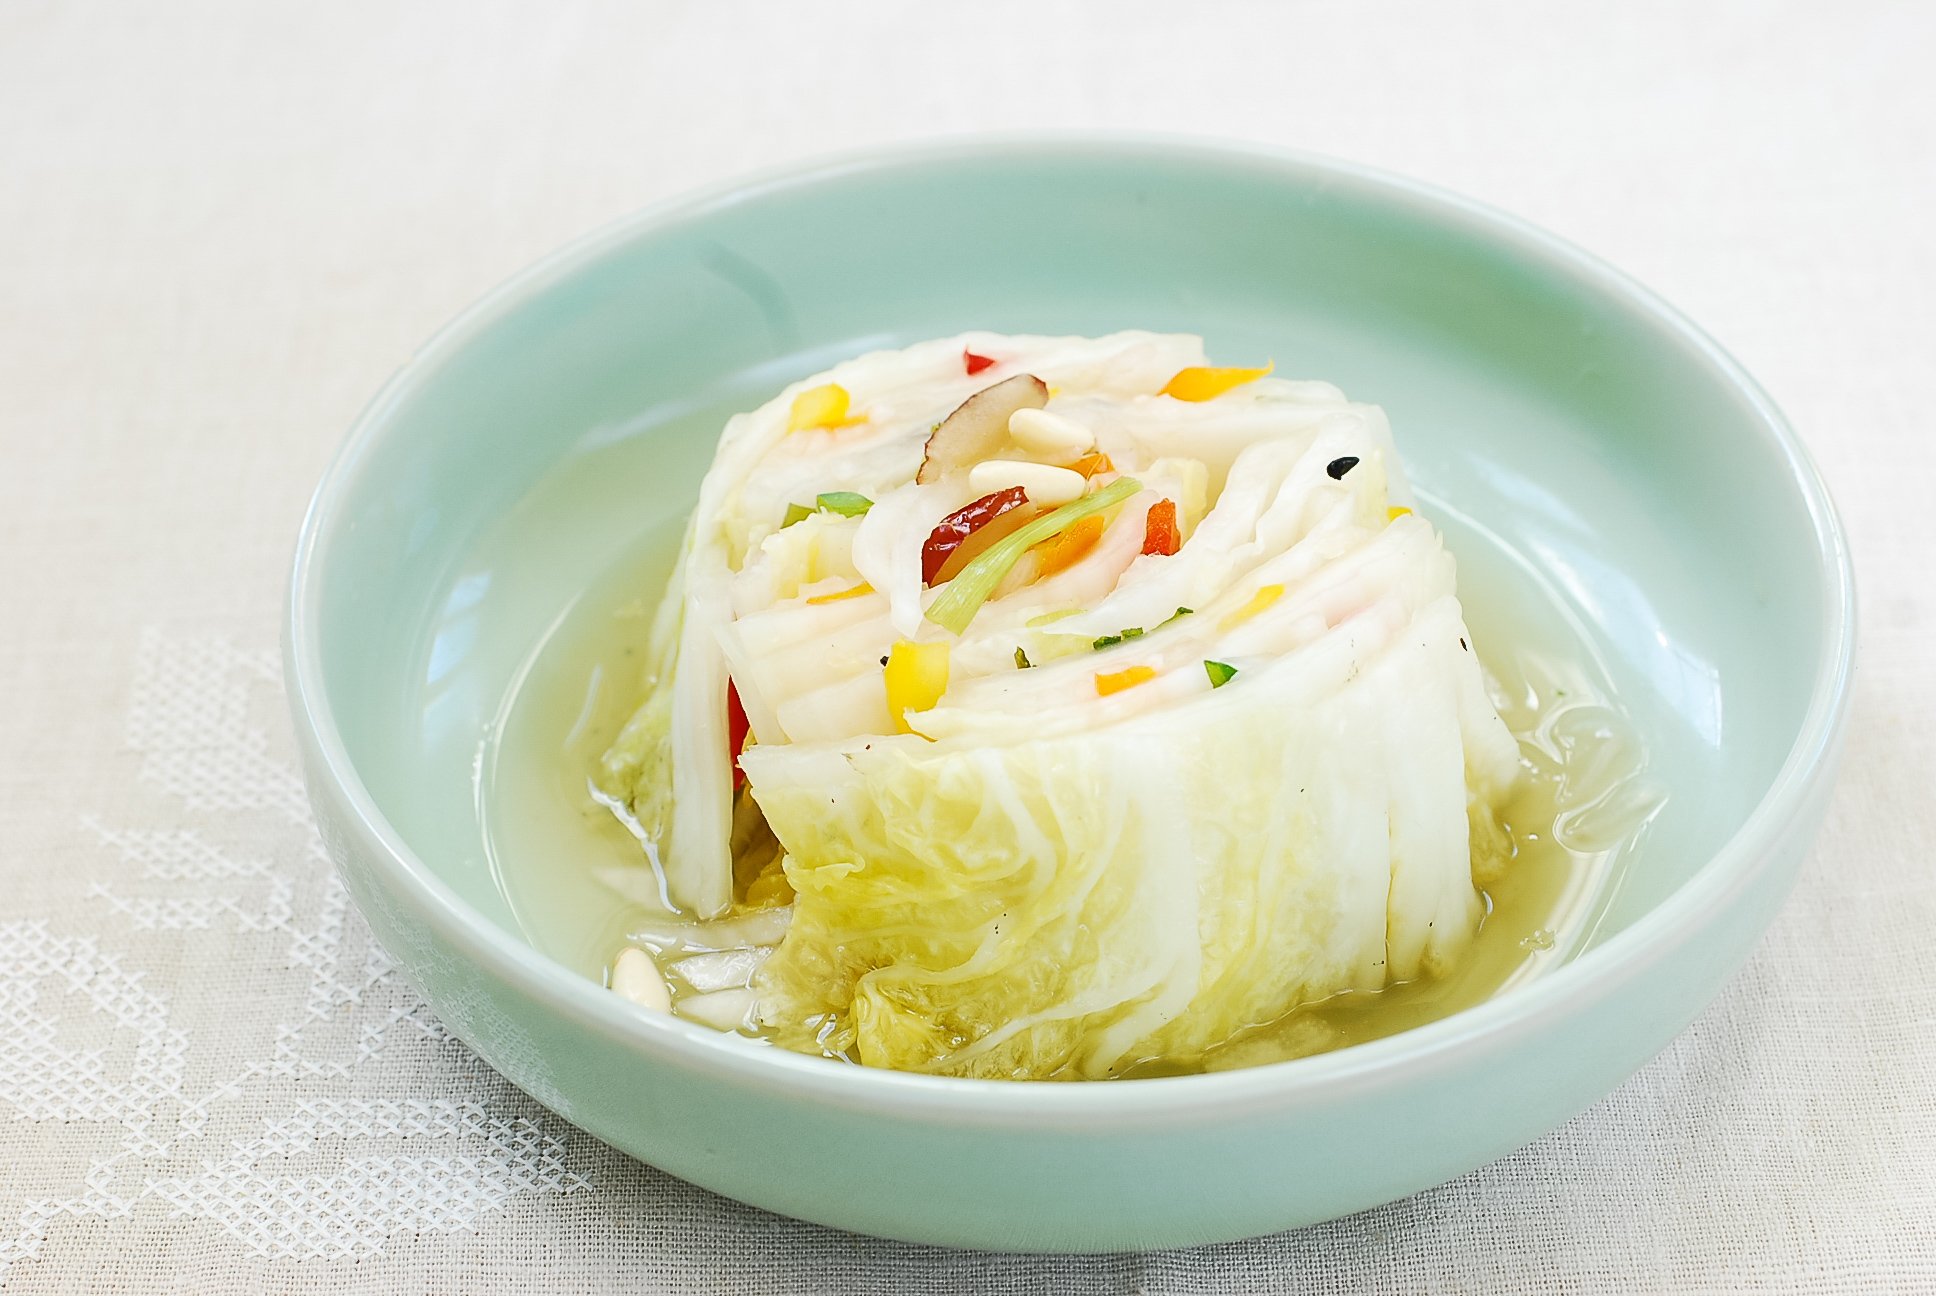 DSC 2956 1 - Baek Kimchi (White Kimchi)